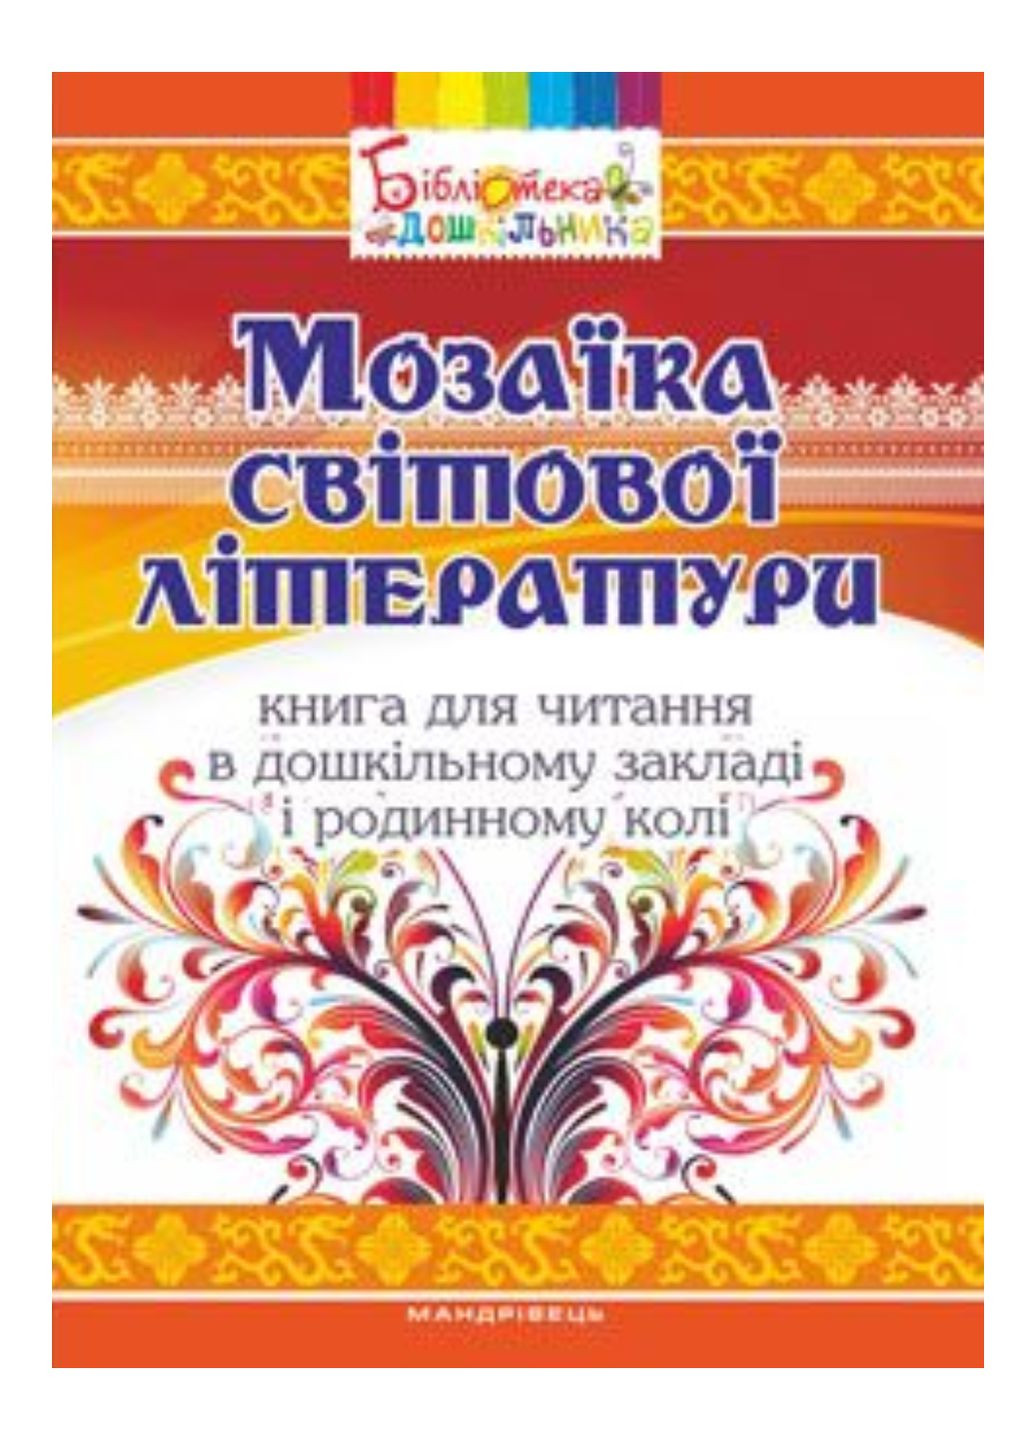 Мозаїка світової літератури Низковська О., 978-966-634-964-7 Мандрівець (280925484)